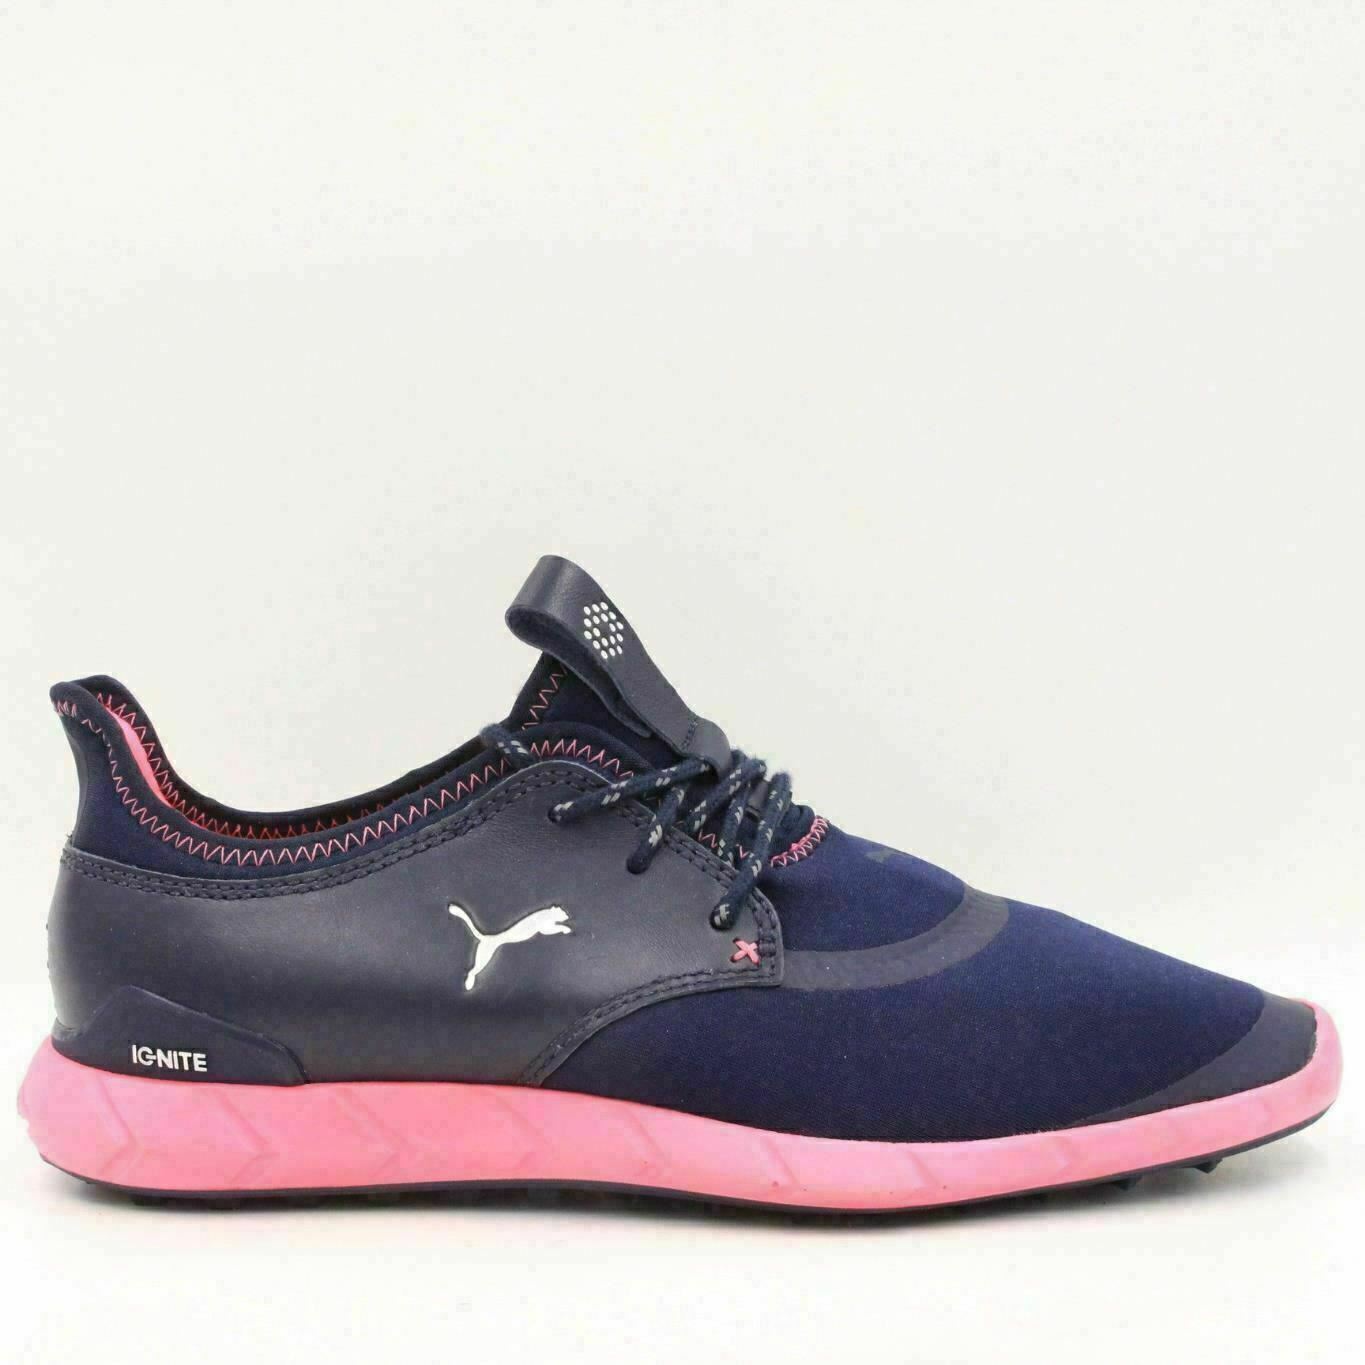 puma women's ignite spikeless sport golf shoes